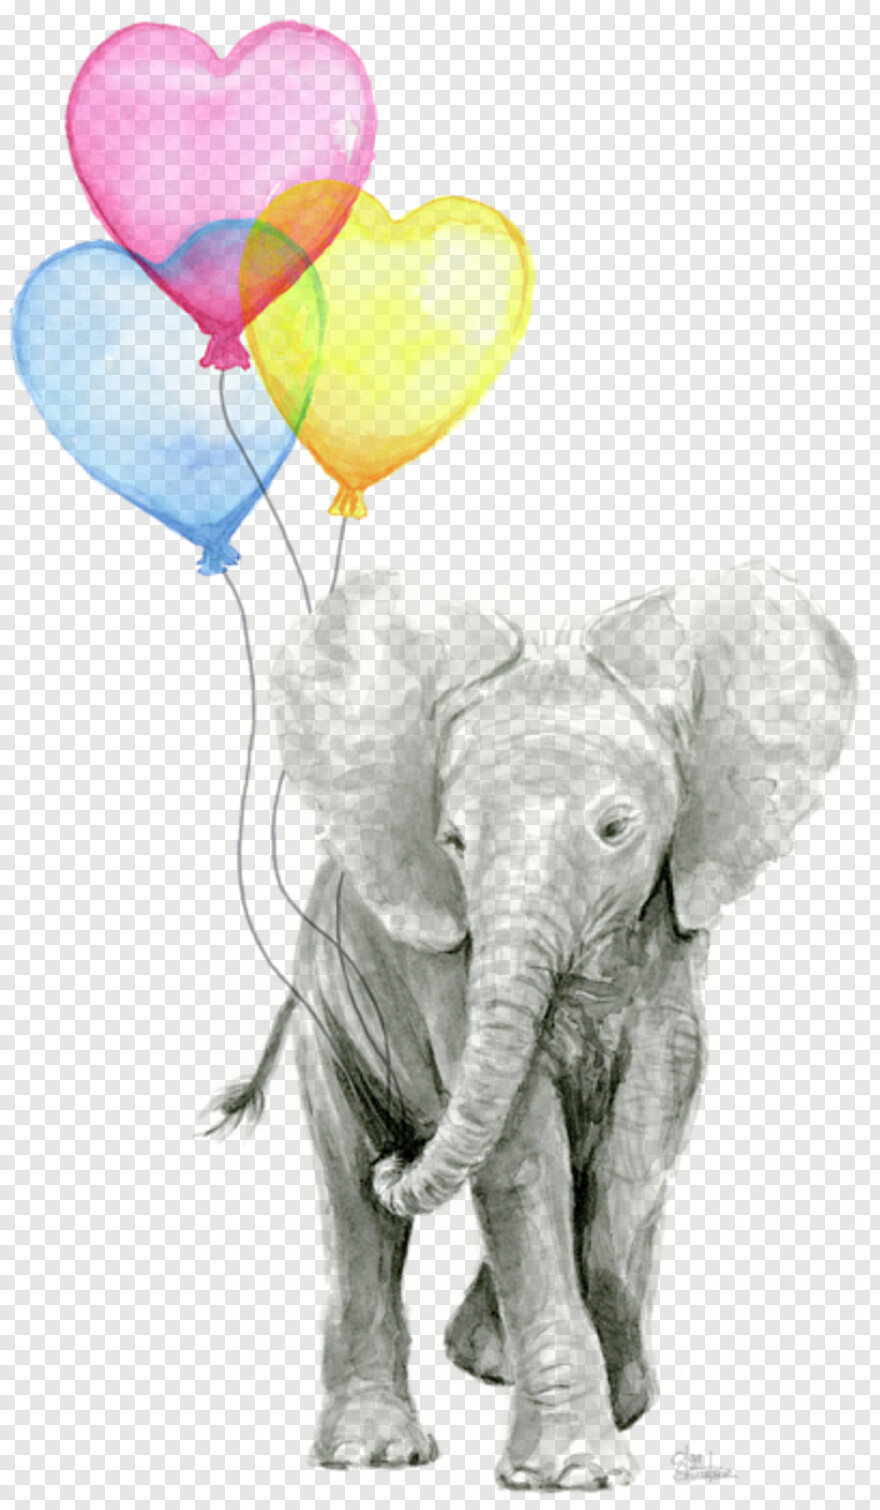 republican-elephant # 415465